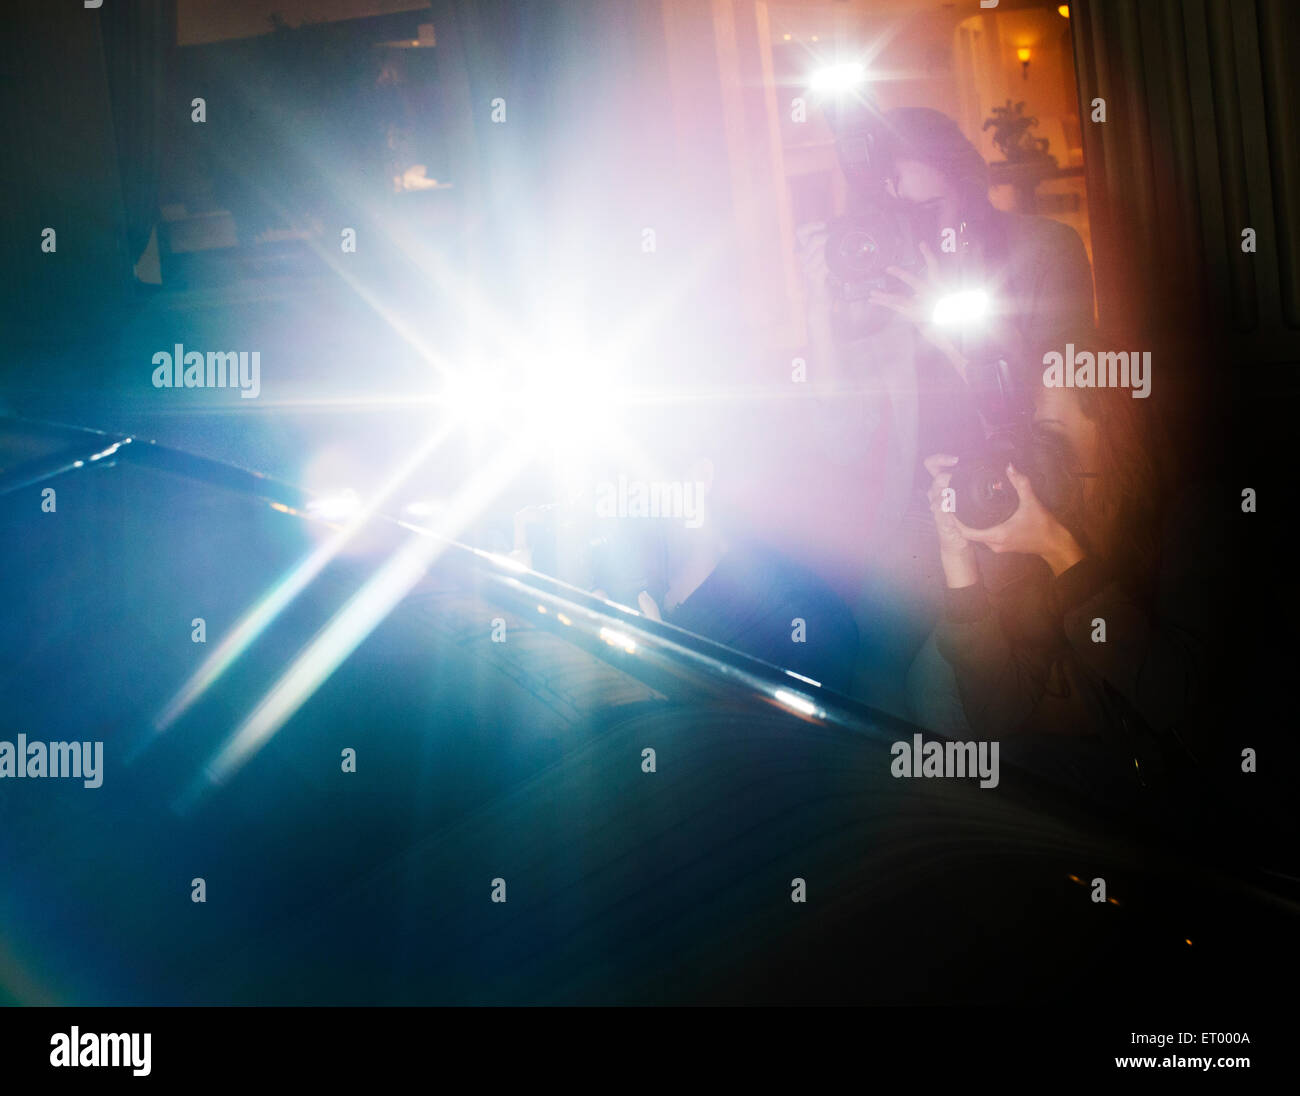 Reflets de flash paparazzi photographier pour l'événement Banque D'Images